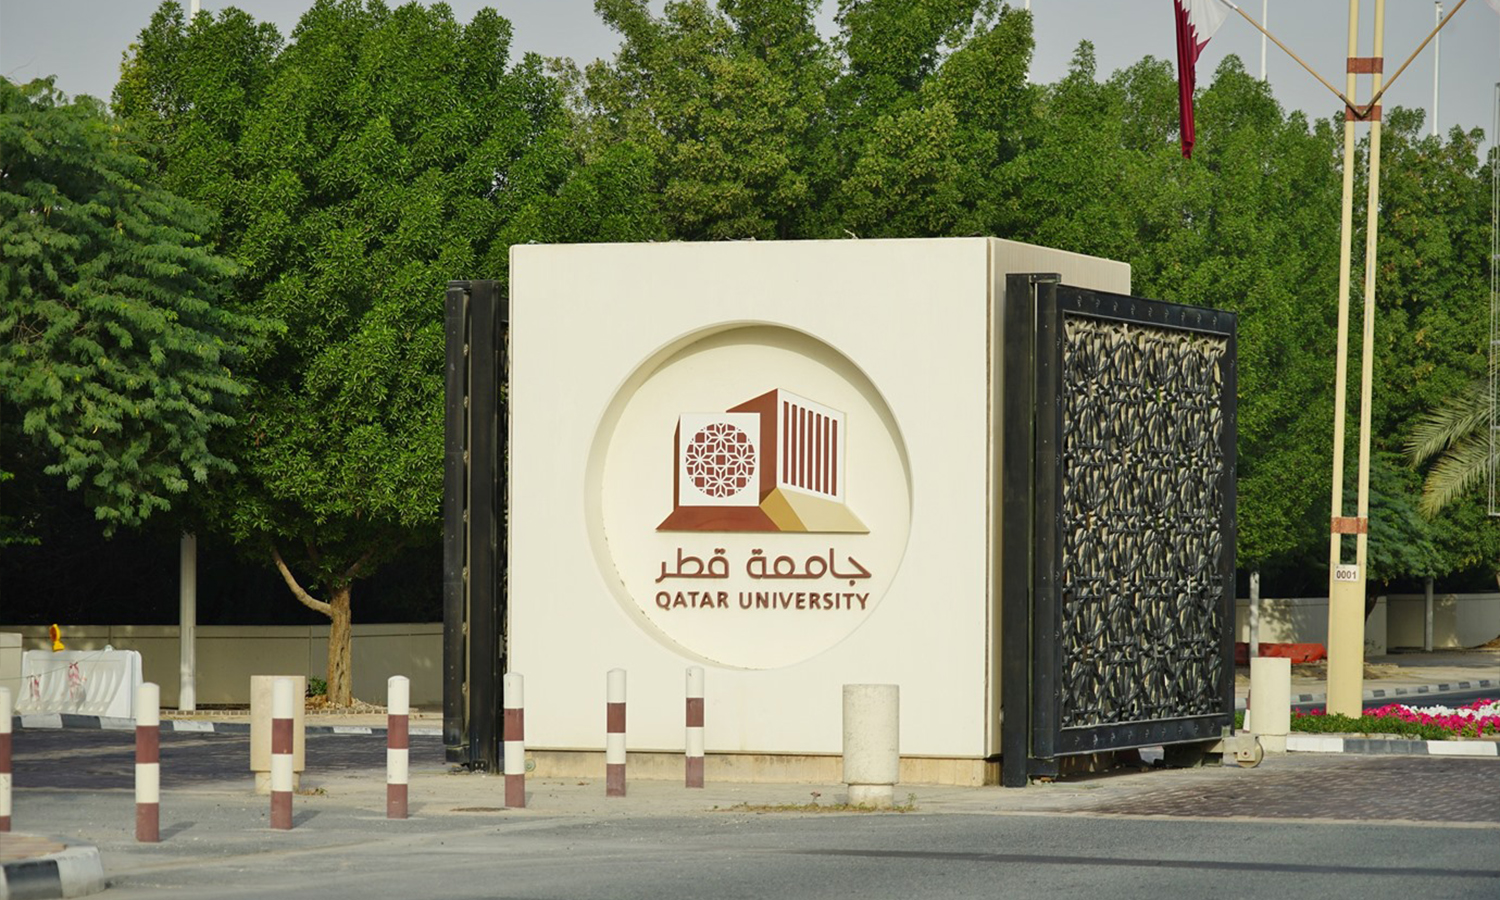 تعبيرية لجامعة قطر - تموز 2020 (صحيفة العرب القطرية)